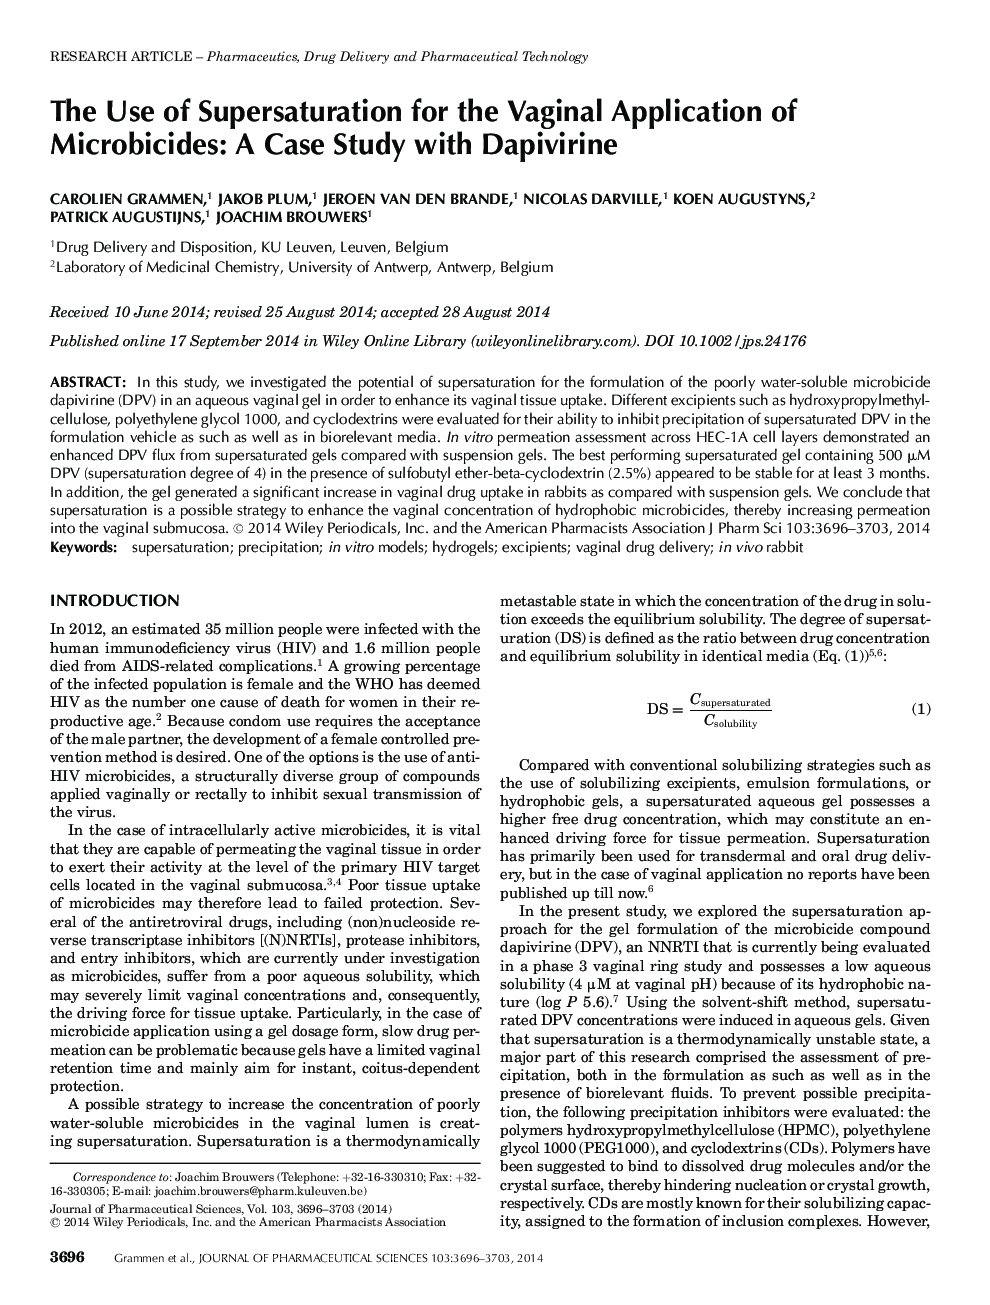 استفاده از اضافه وزن برای استفاده از واژینال میکروبیکسیدها: مطالعه موردی با دپیفیرین 